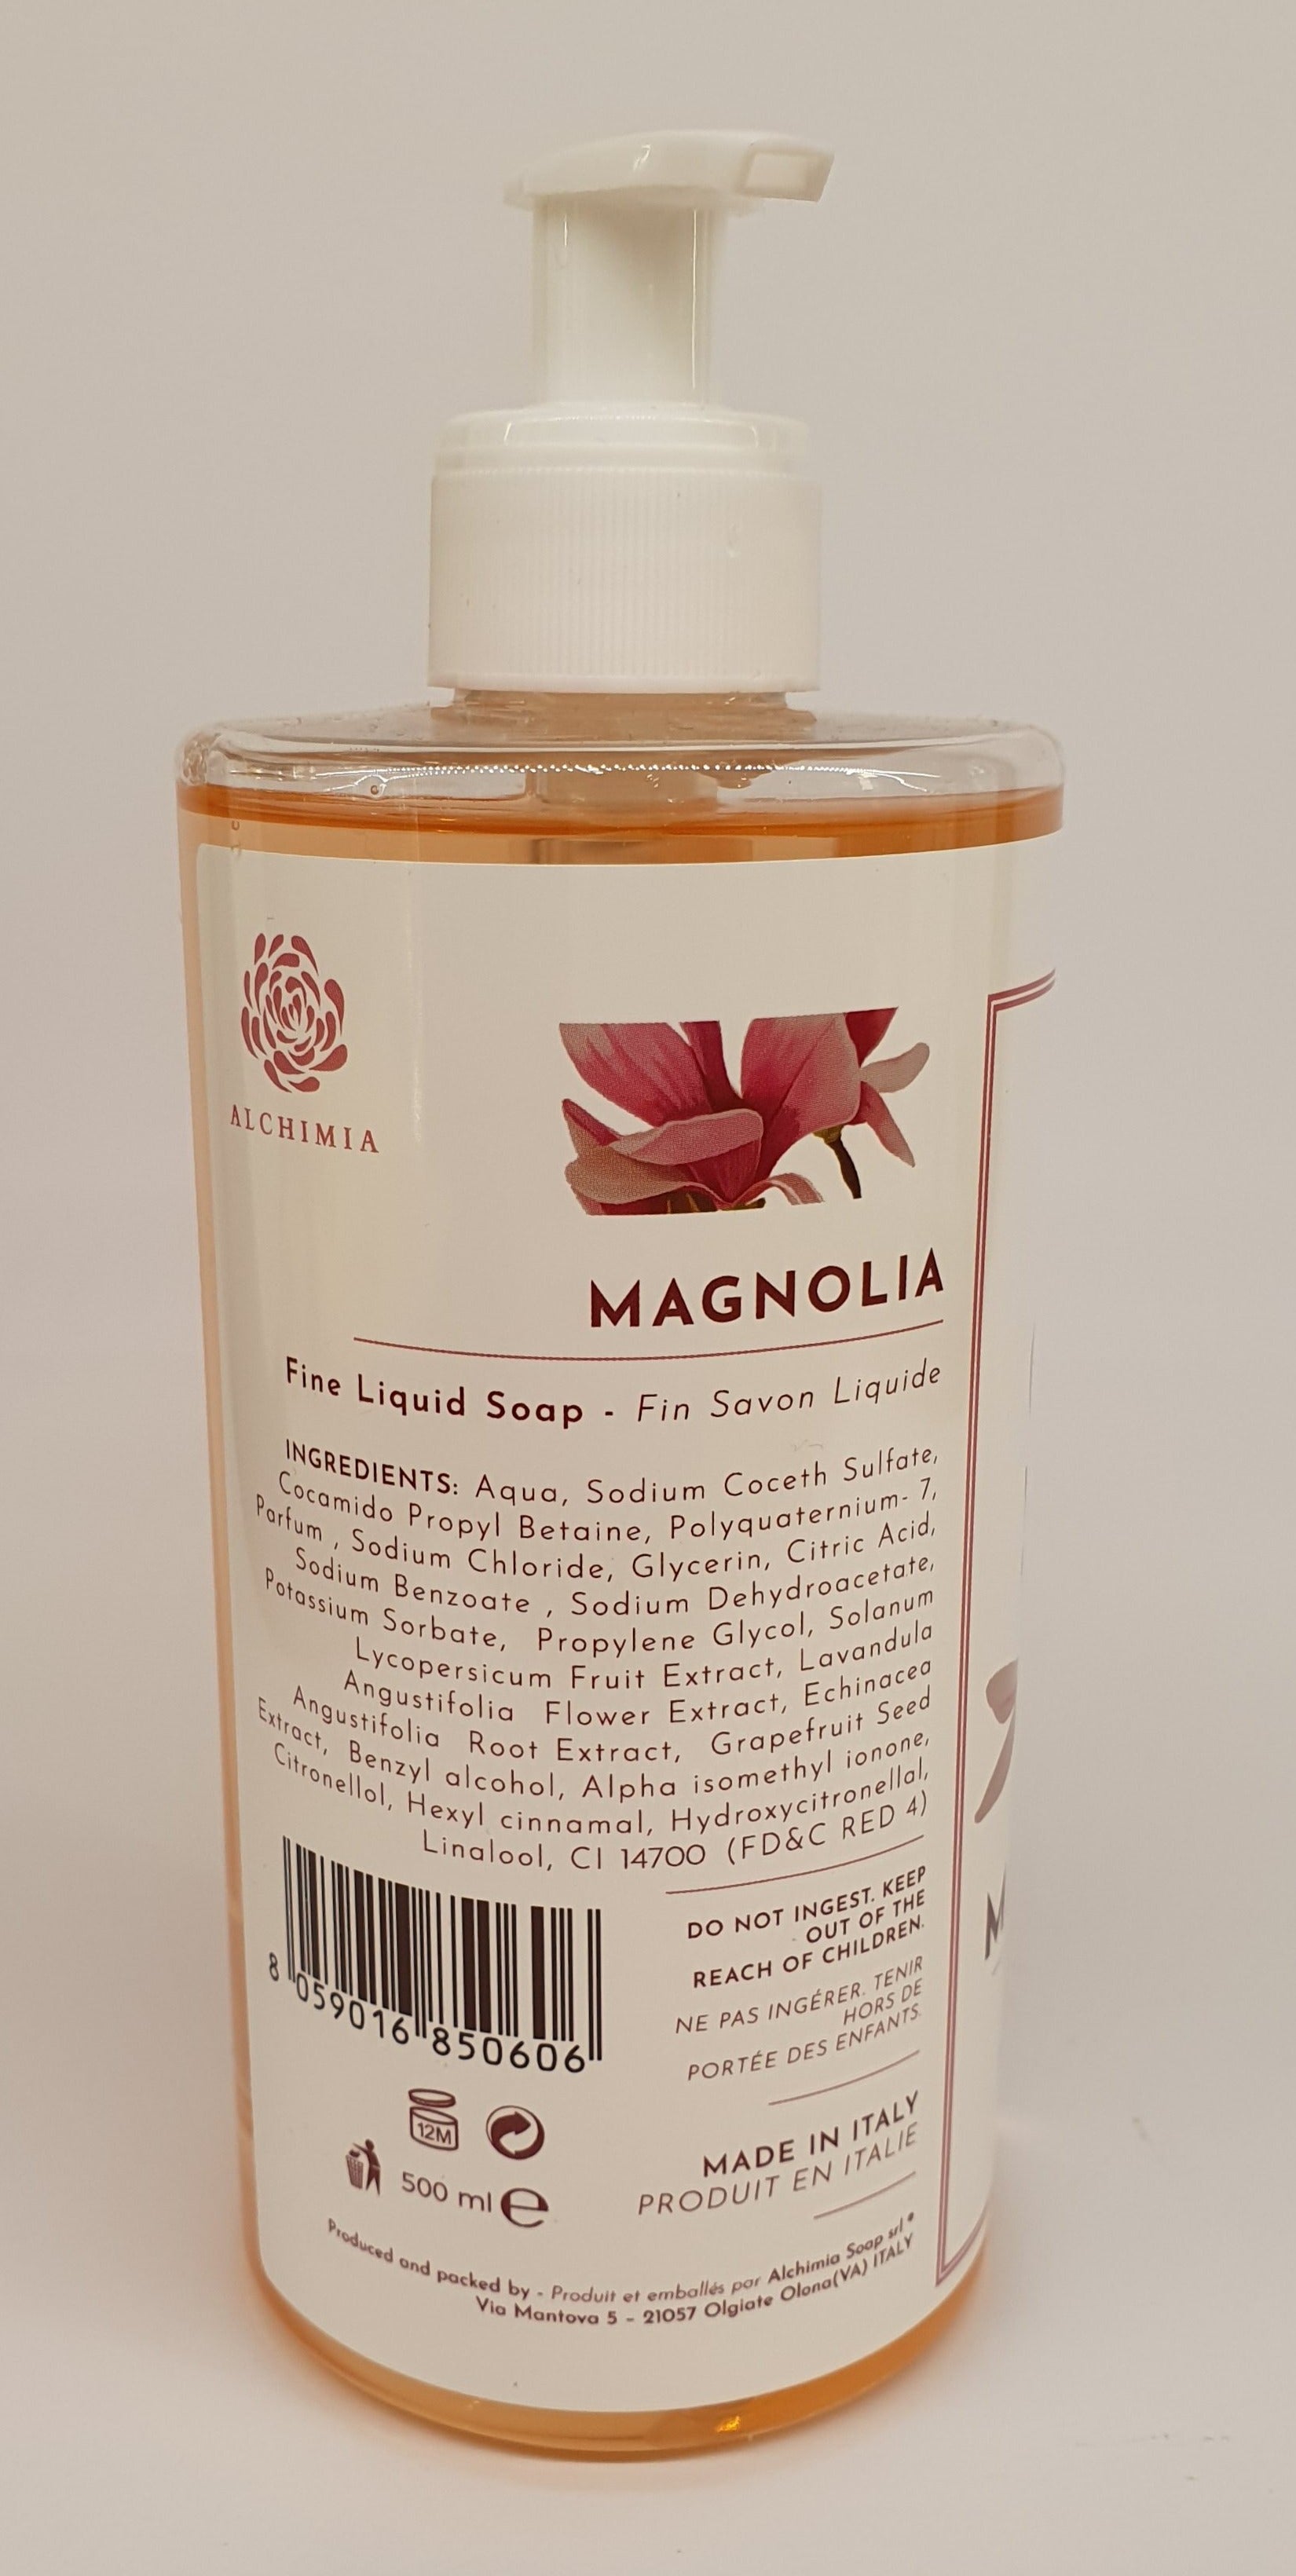 Liquid Soap Alchemy Soap Magnolia line "Aromatica" 500ml